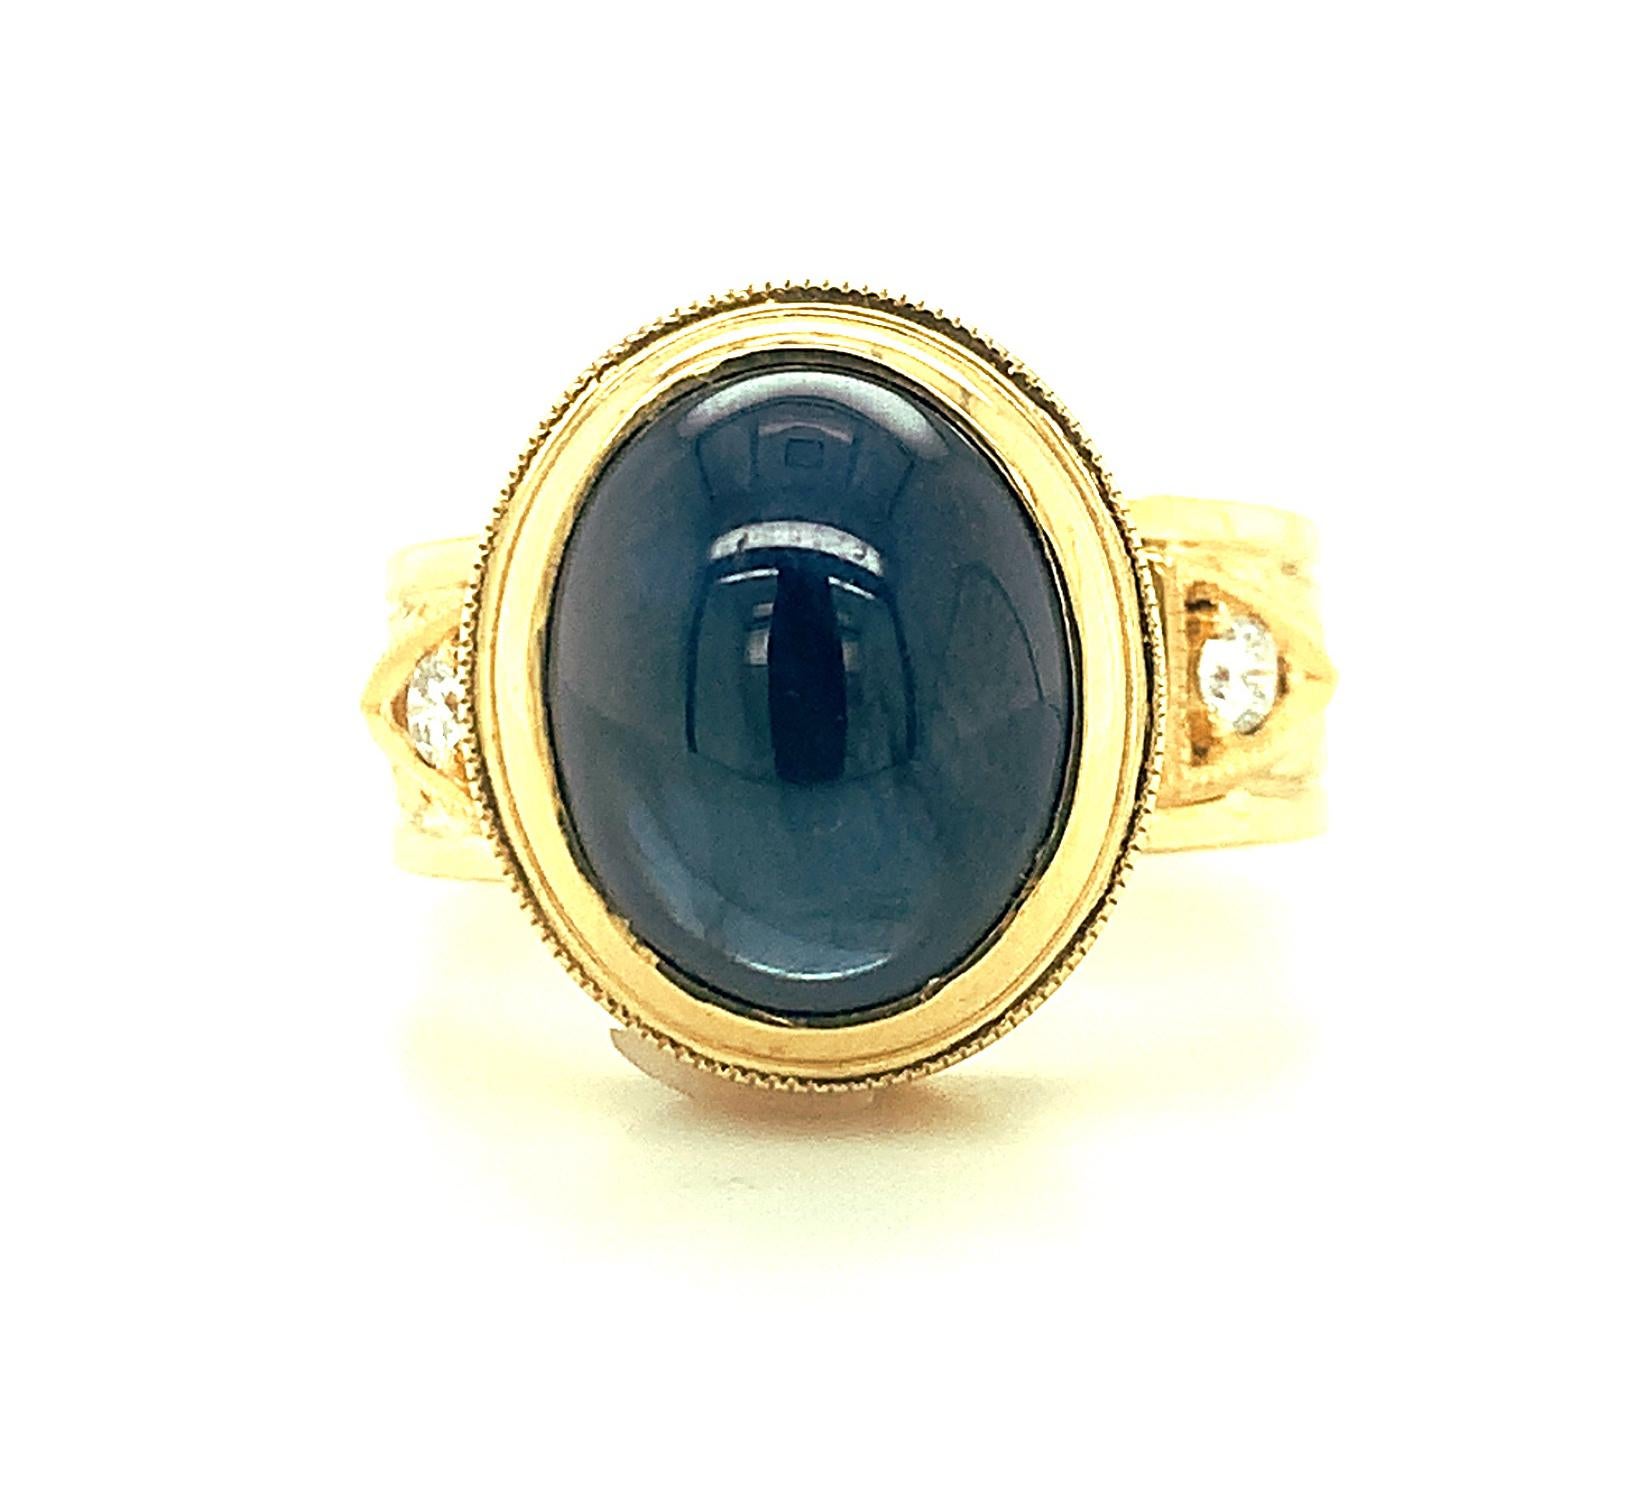 Dieser hübsche Ring zeigt einen großen, 9,06 marineblauen Saphir-Cabochon, der wunderschön in einen aufwendig gravierten Ring aus 18 Karat Gelbgold eingefasst ist. Das wunderschöne, handgravierte Band ist kunstvoll gestaltet und mit zwei runden